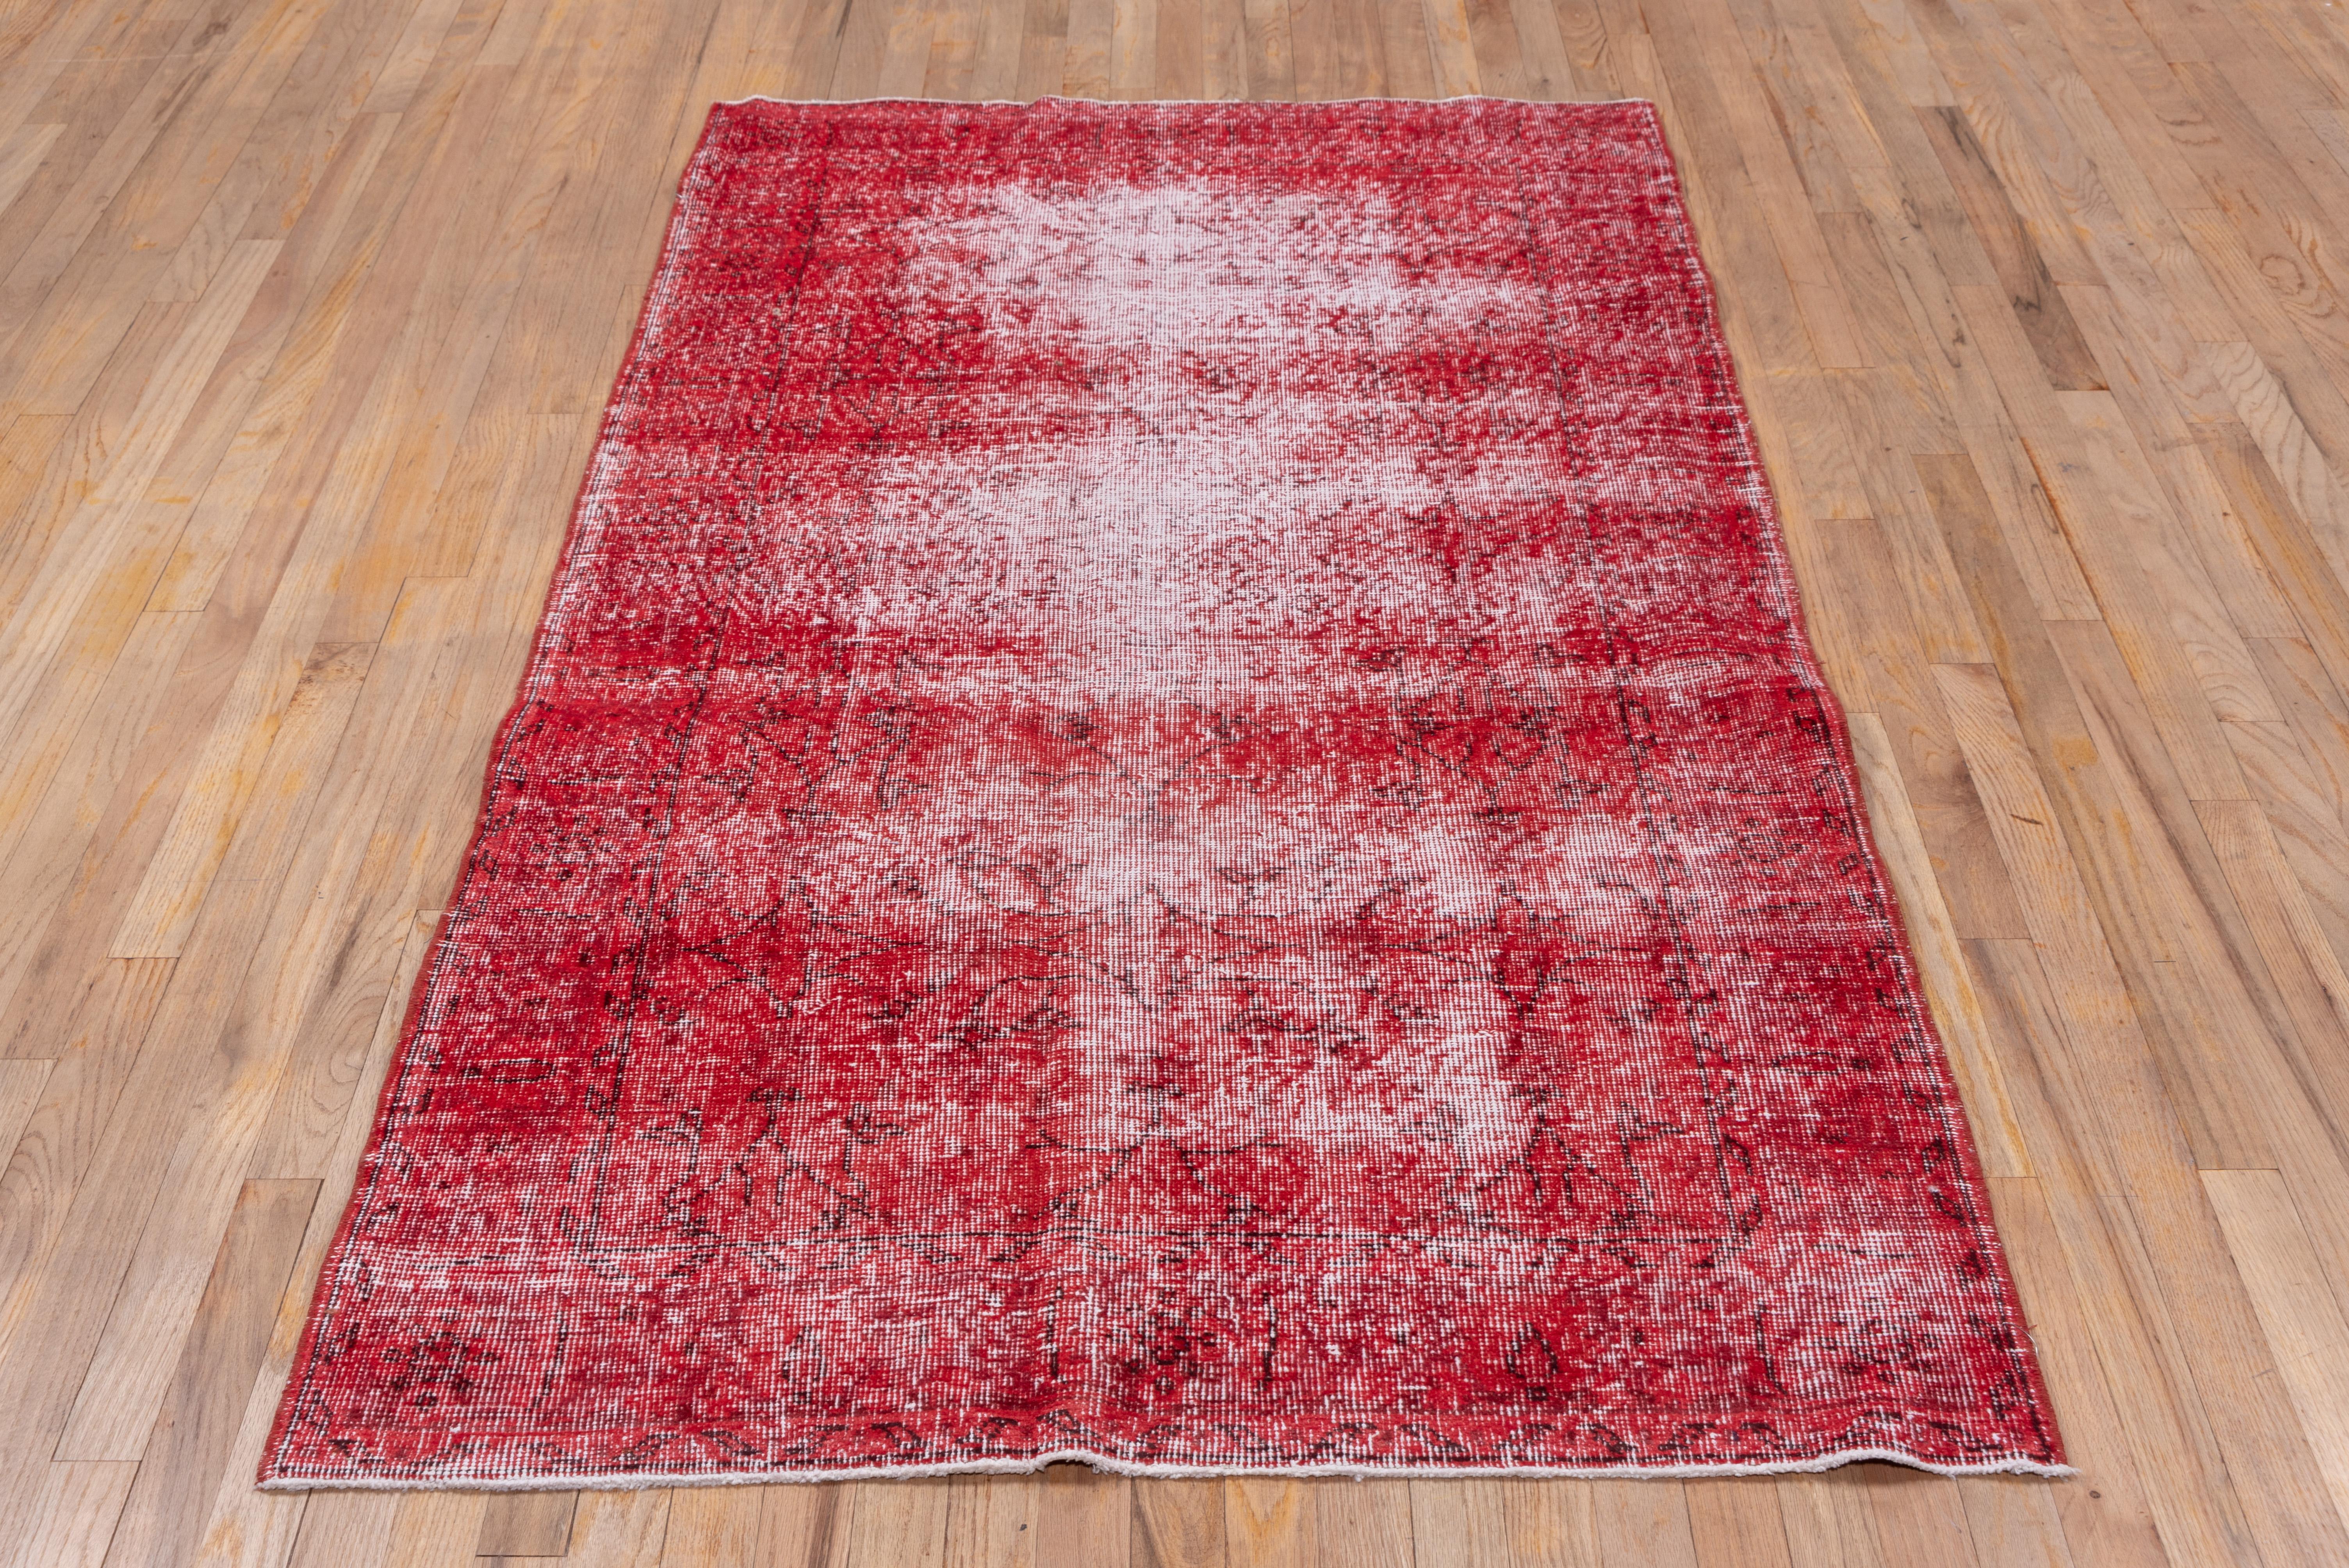 Ce tapis rouge shabby chic en sparterie turque surteinte présente un motif défini par l'usure au-delà de la détresse générale. Des bandes verticales et horizontales de couleur blanc cassé se croisent près du centre. Les conditions Shabby chic et